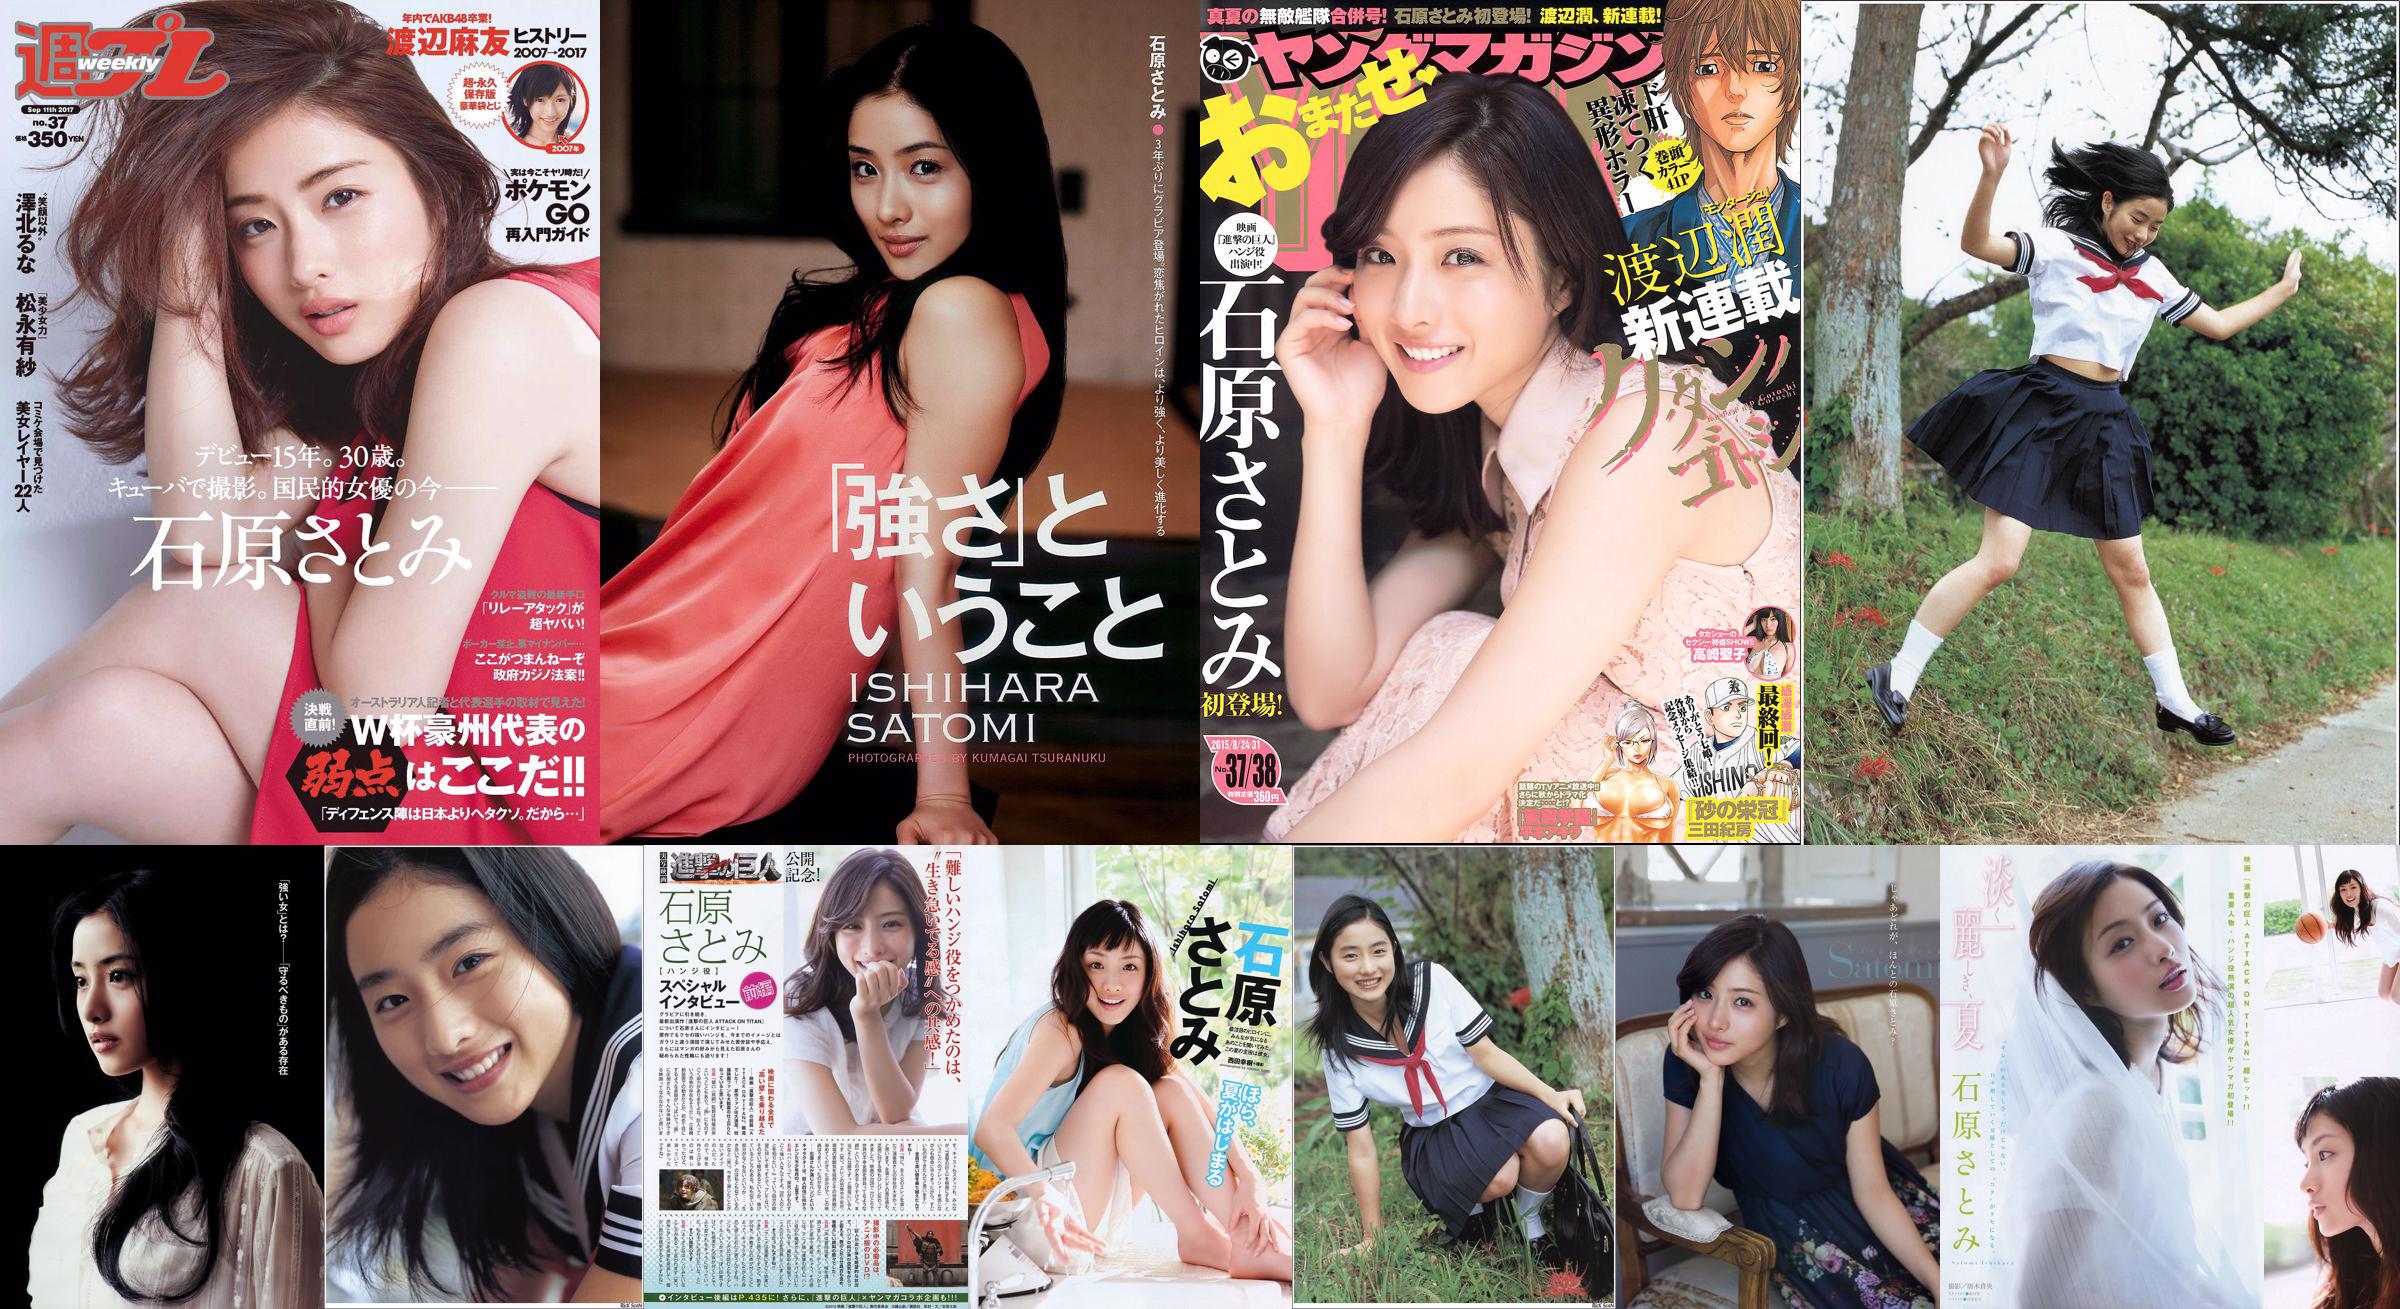 [Revista joven] Ishihara さとみ Takasaki Seiko 2015 No.37-38 Revista fotográfica No.0be7fe Página 5